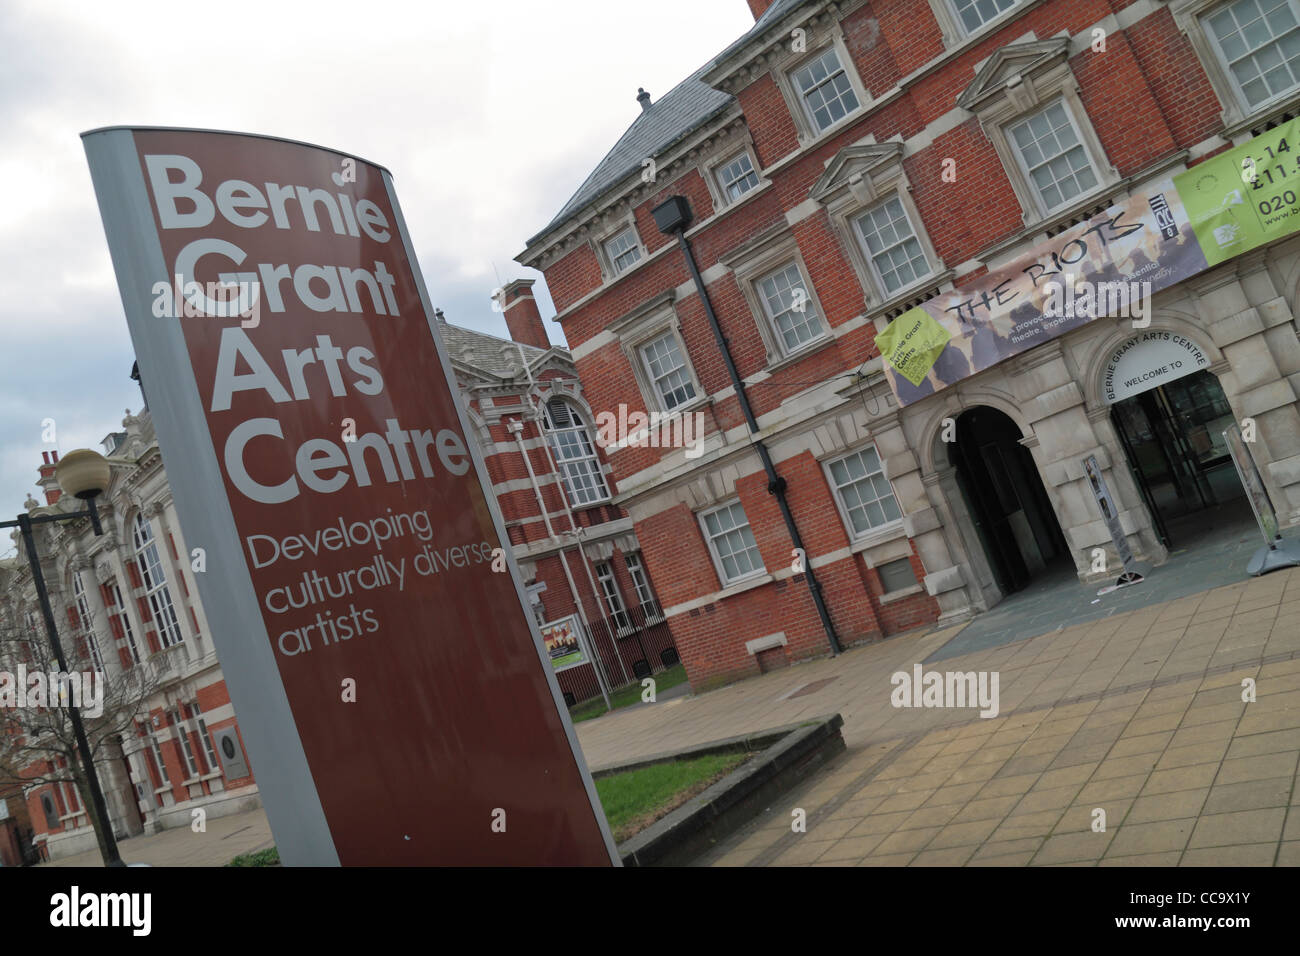 L'ingresso anteriore edificio (chiamato mozzo') di Bernie Grant Arts Center, Tottenham, a nord di Londra, Regno Unito, Foto Stock